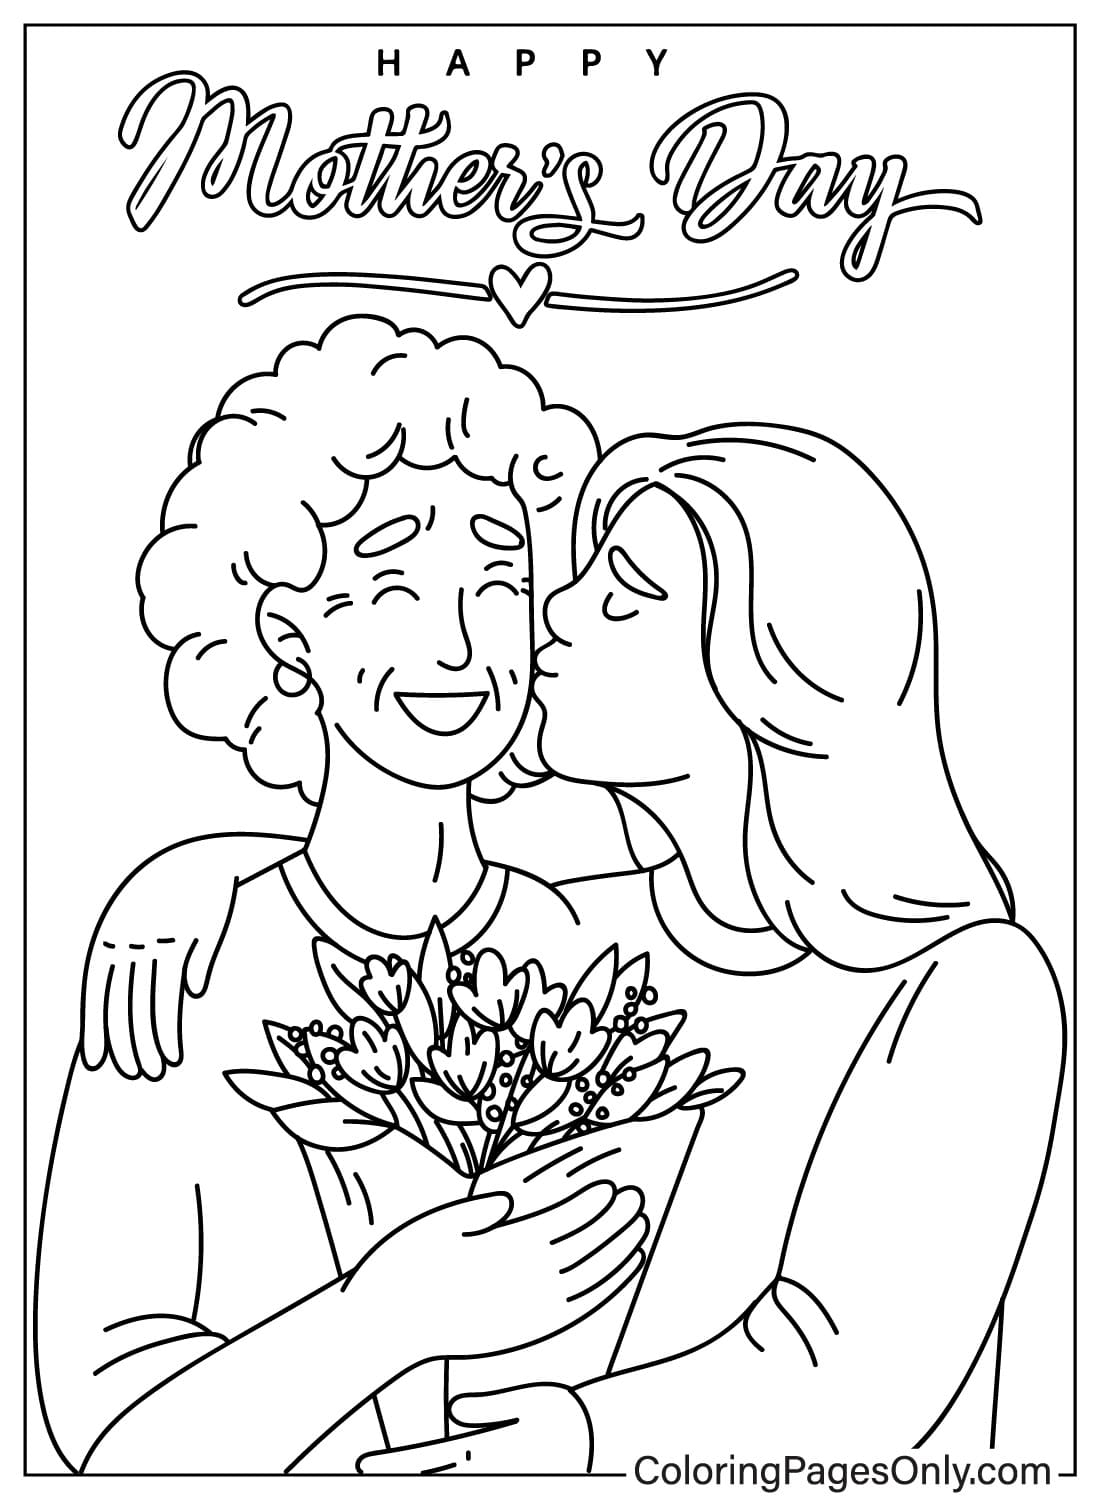 Mayo Feliz Día de la Madre Página para colorear del Día de la Madre